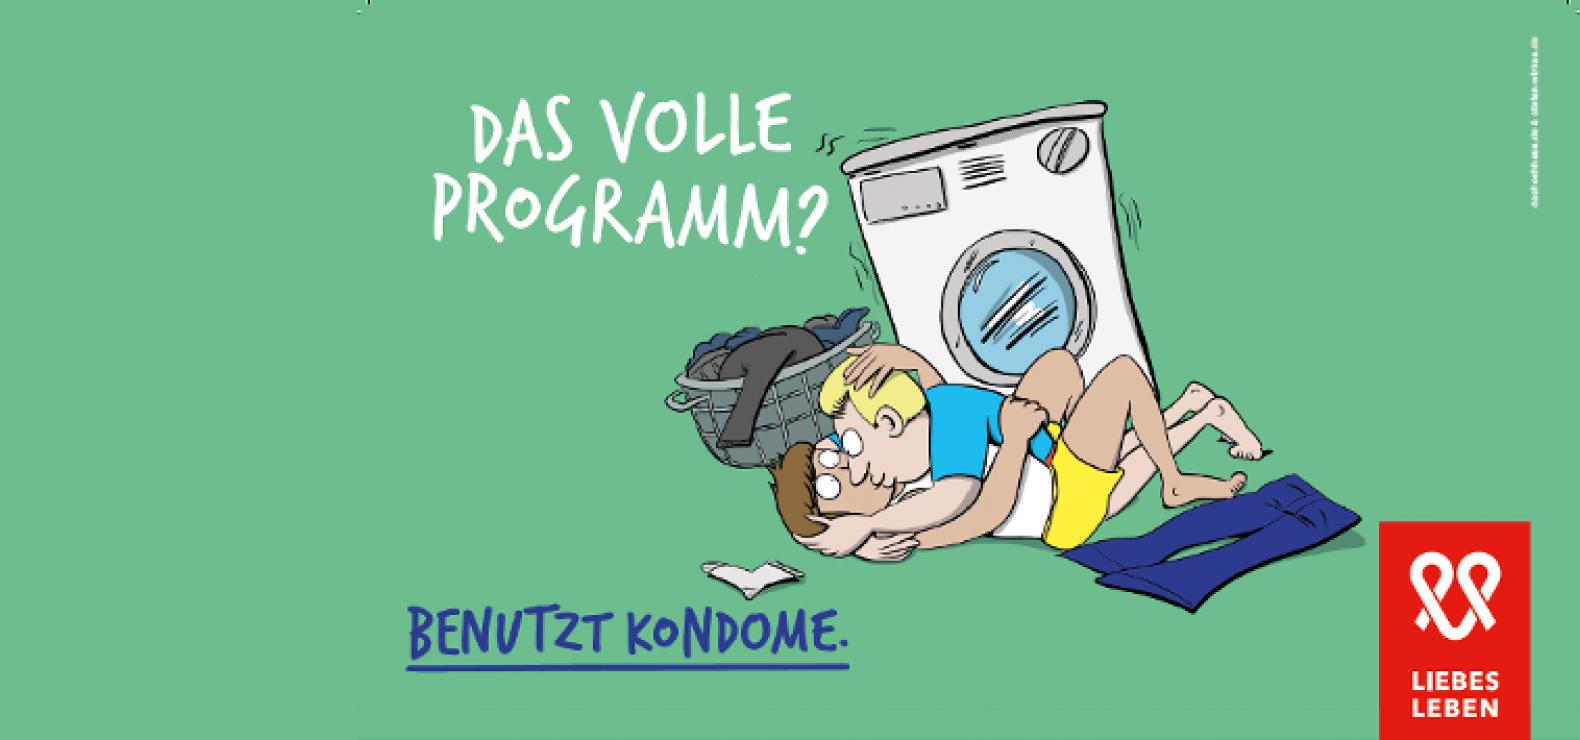 Zwei Männer liegen in enger Umarmung vor einer Waschmaschine. Darüber steht der Spruch: Das volle Programm? Benutzt Kondome!